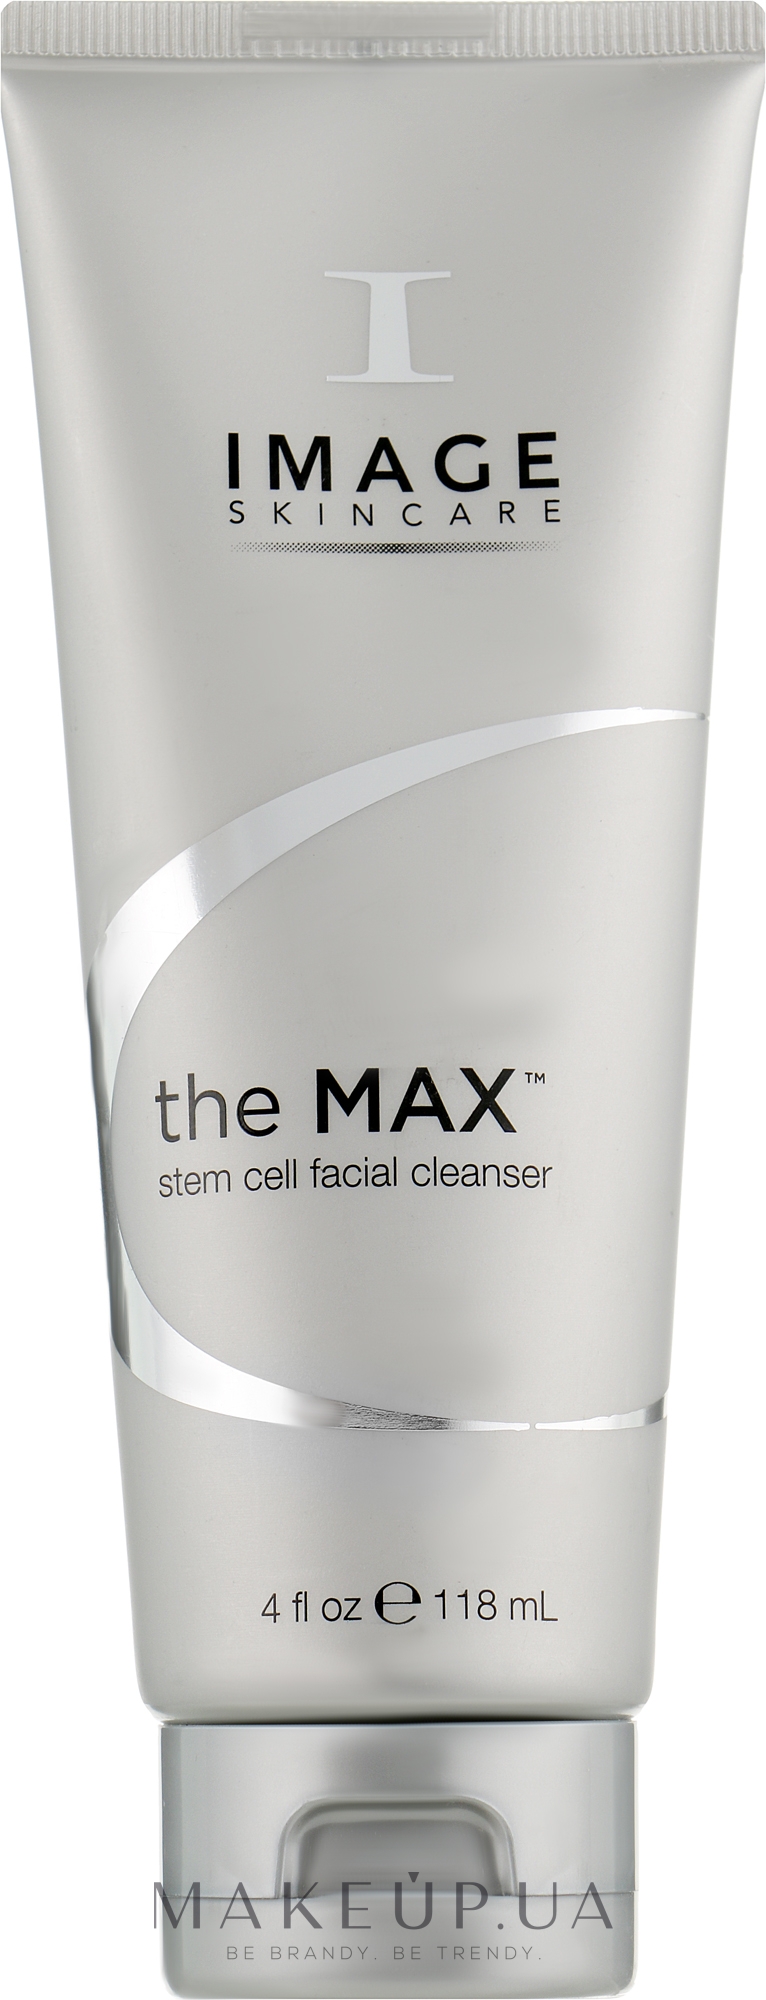 Image Skincare The Max Stem Cell Facial Cleanser Очищающий гель купить по лучшей цене в